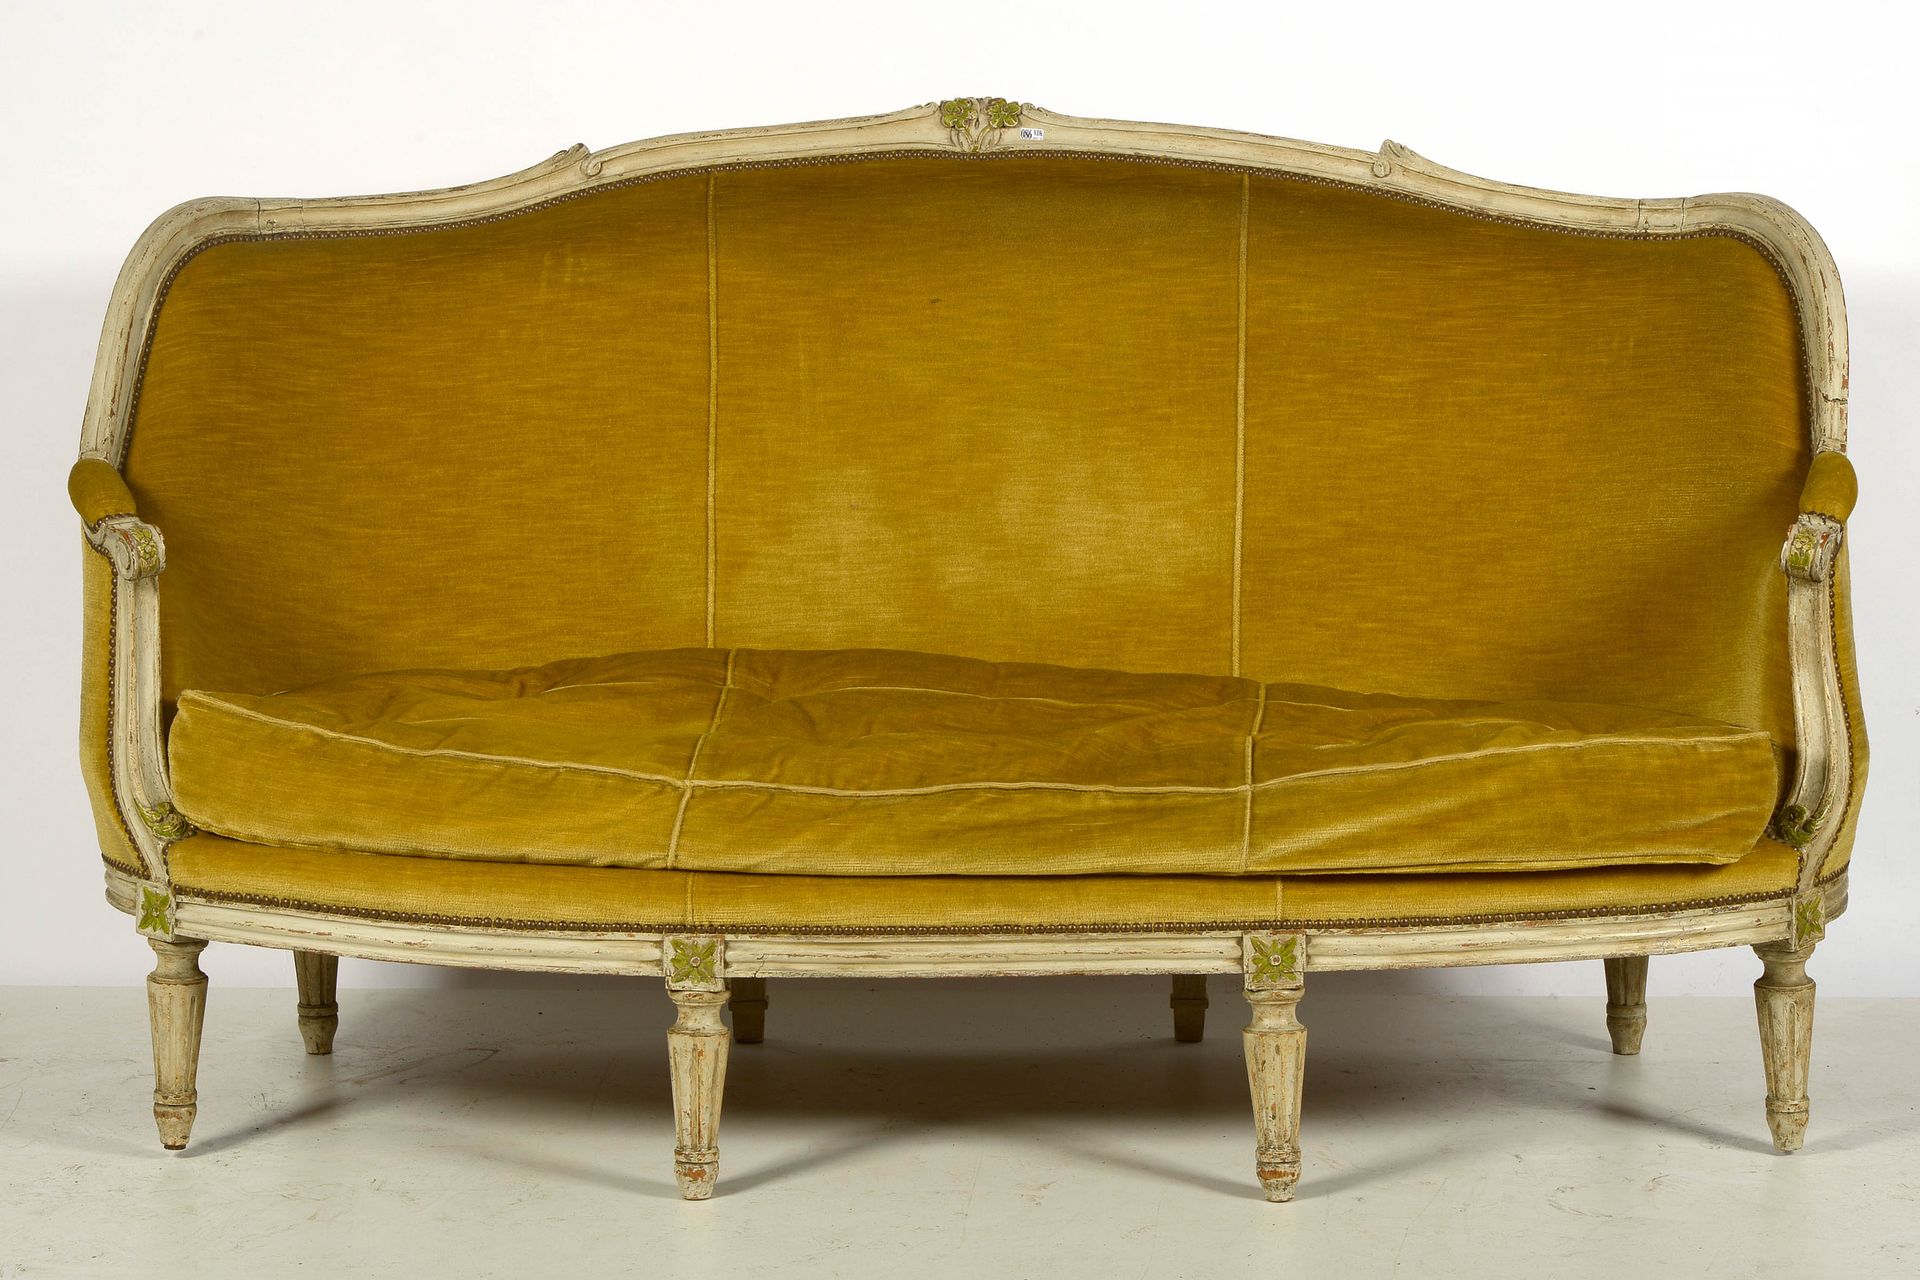 Null 路易十六 "Corbeille "三座沙发，木雕，有多色的痕迹，用黄色天鹅绒装饰。年代：18世纪。长：+/-184厘米。